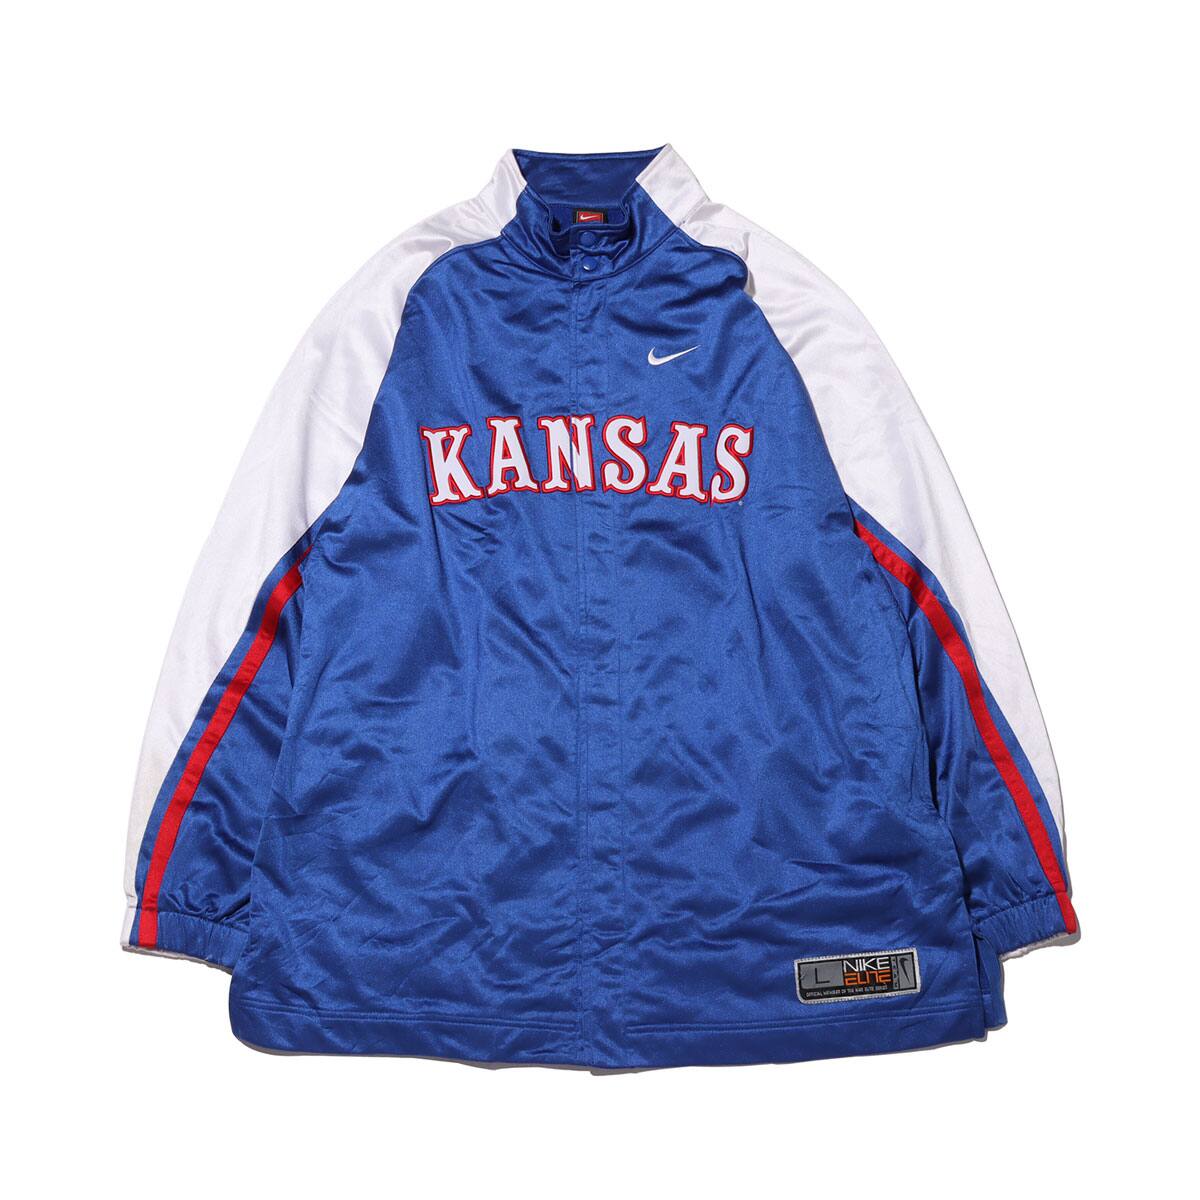 Nike Kansas Jersey Jacket Used Blue 21sp I